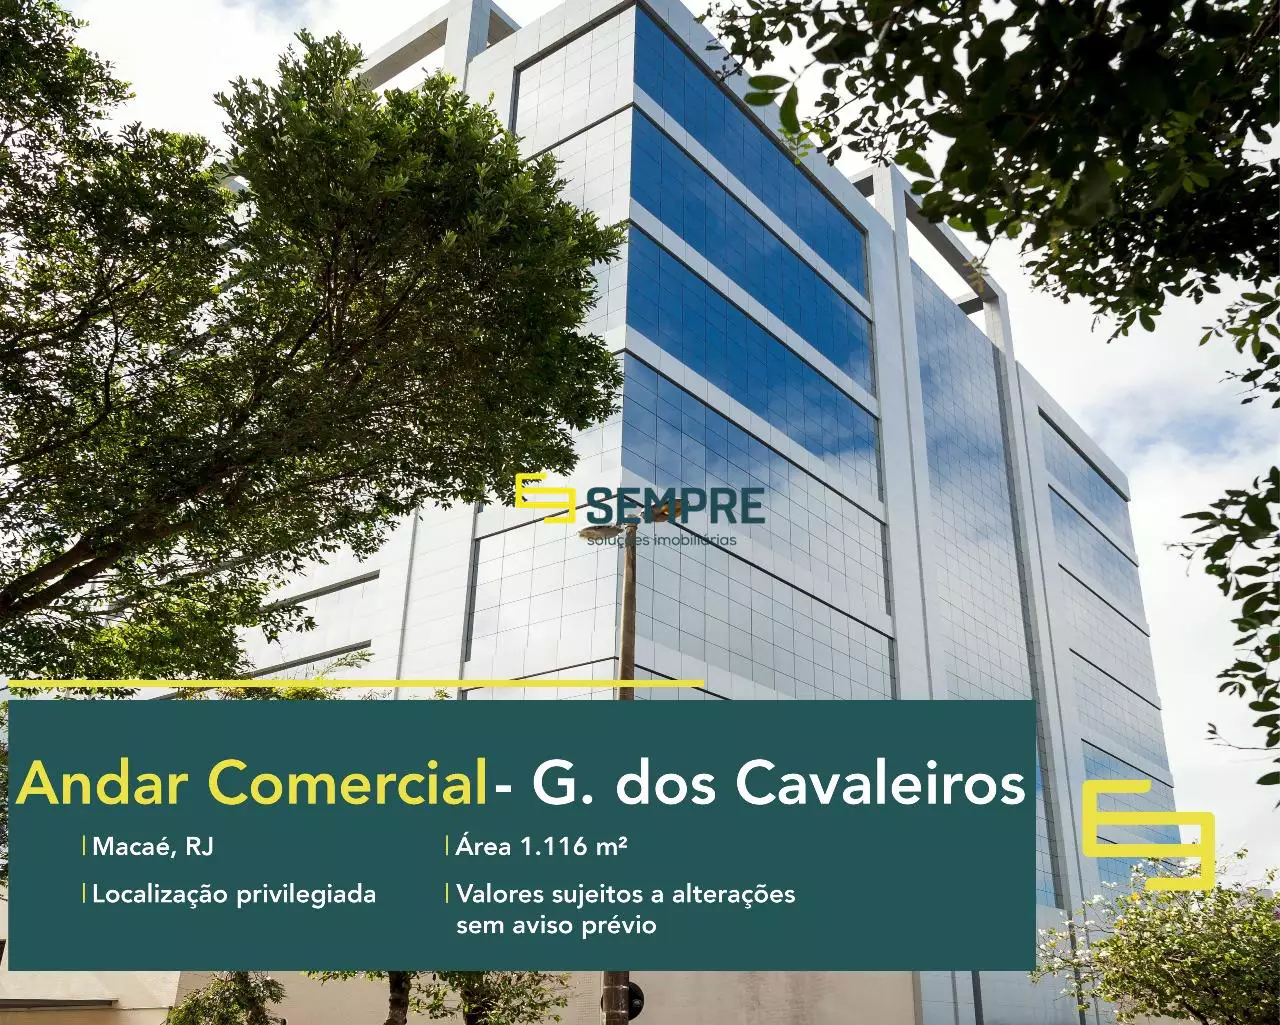 Laje corporativa no Edifício The Corporate para locação no RJ, excelente localização. O ponto comercial conta com área de 1.116 m².